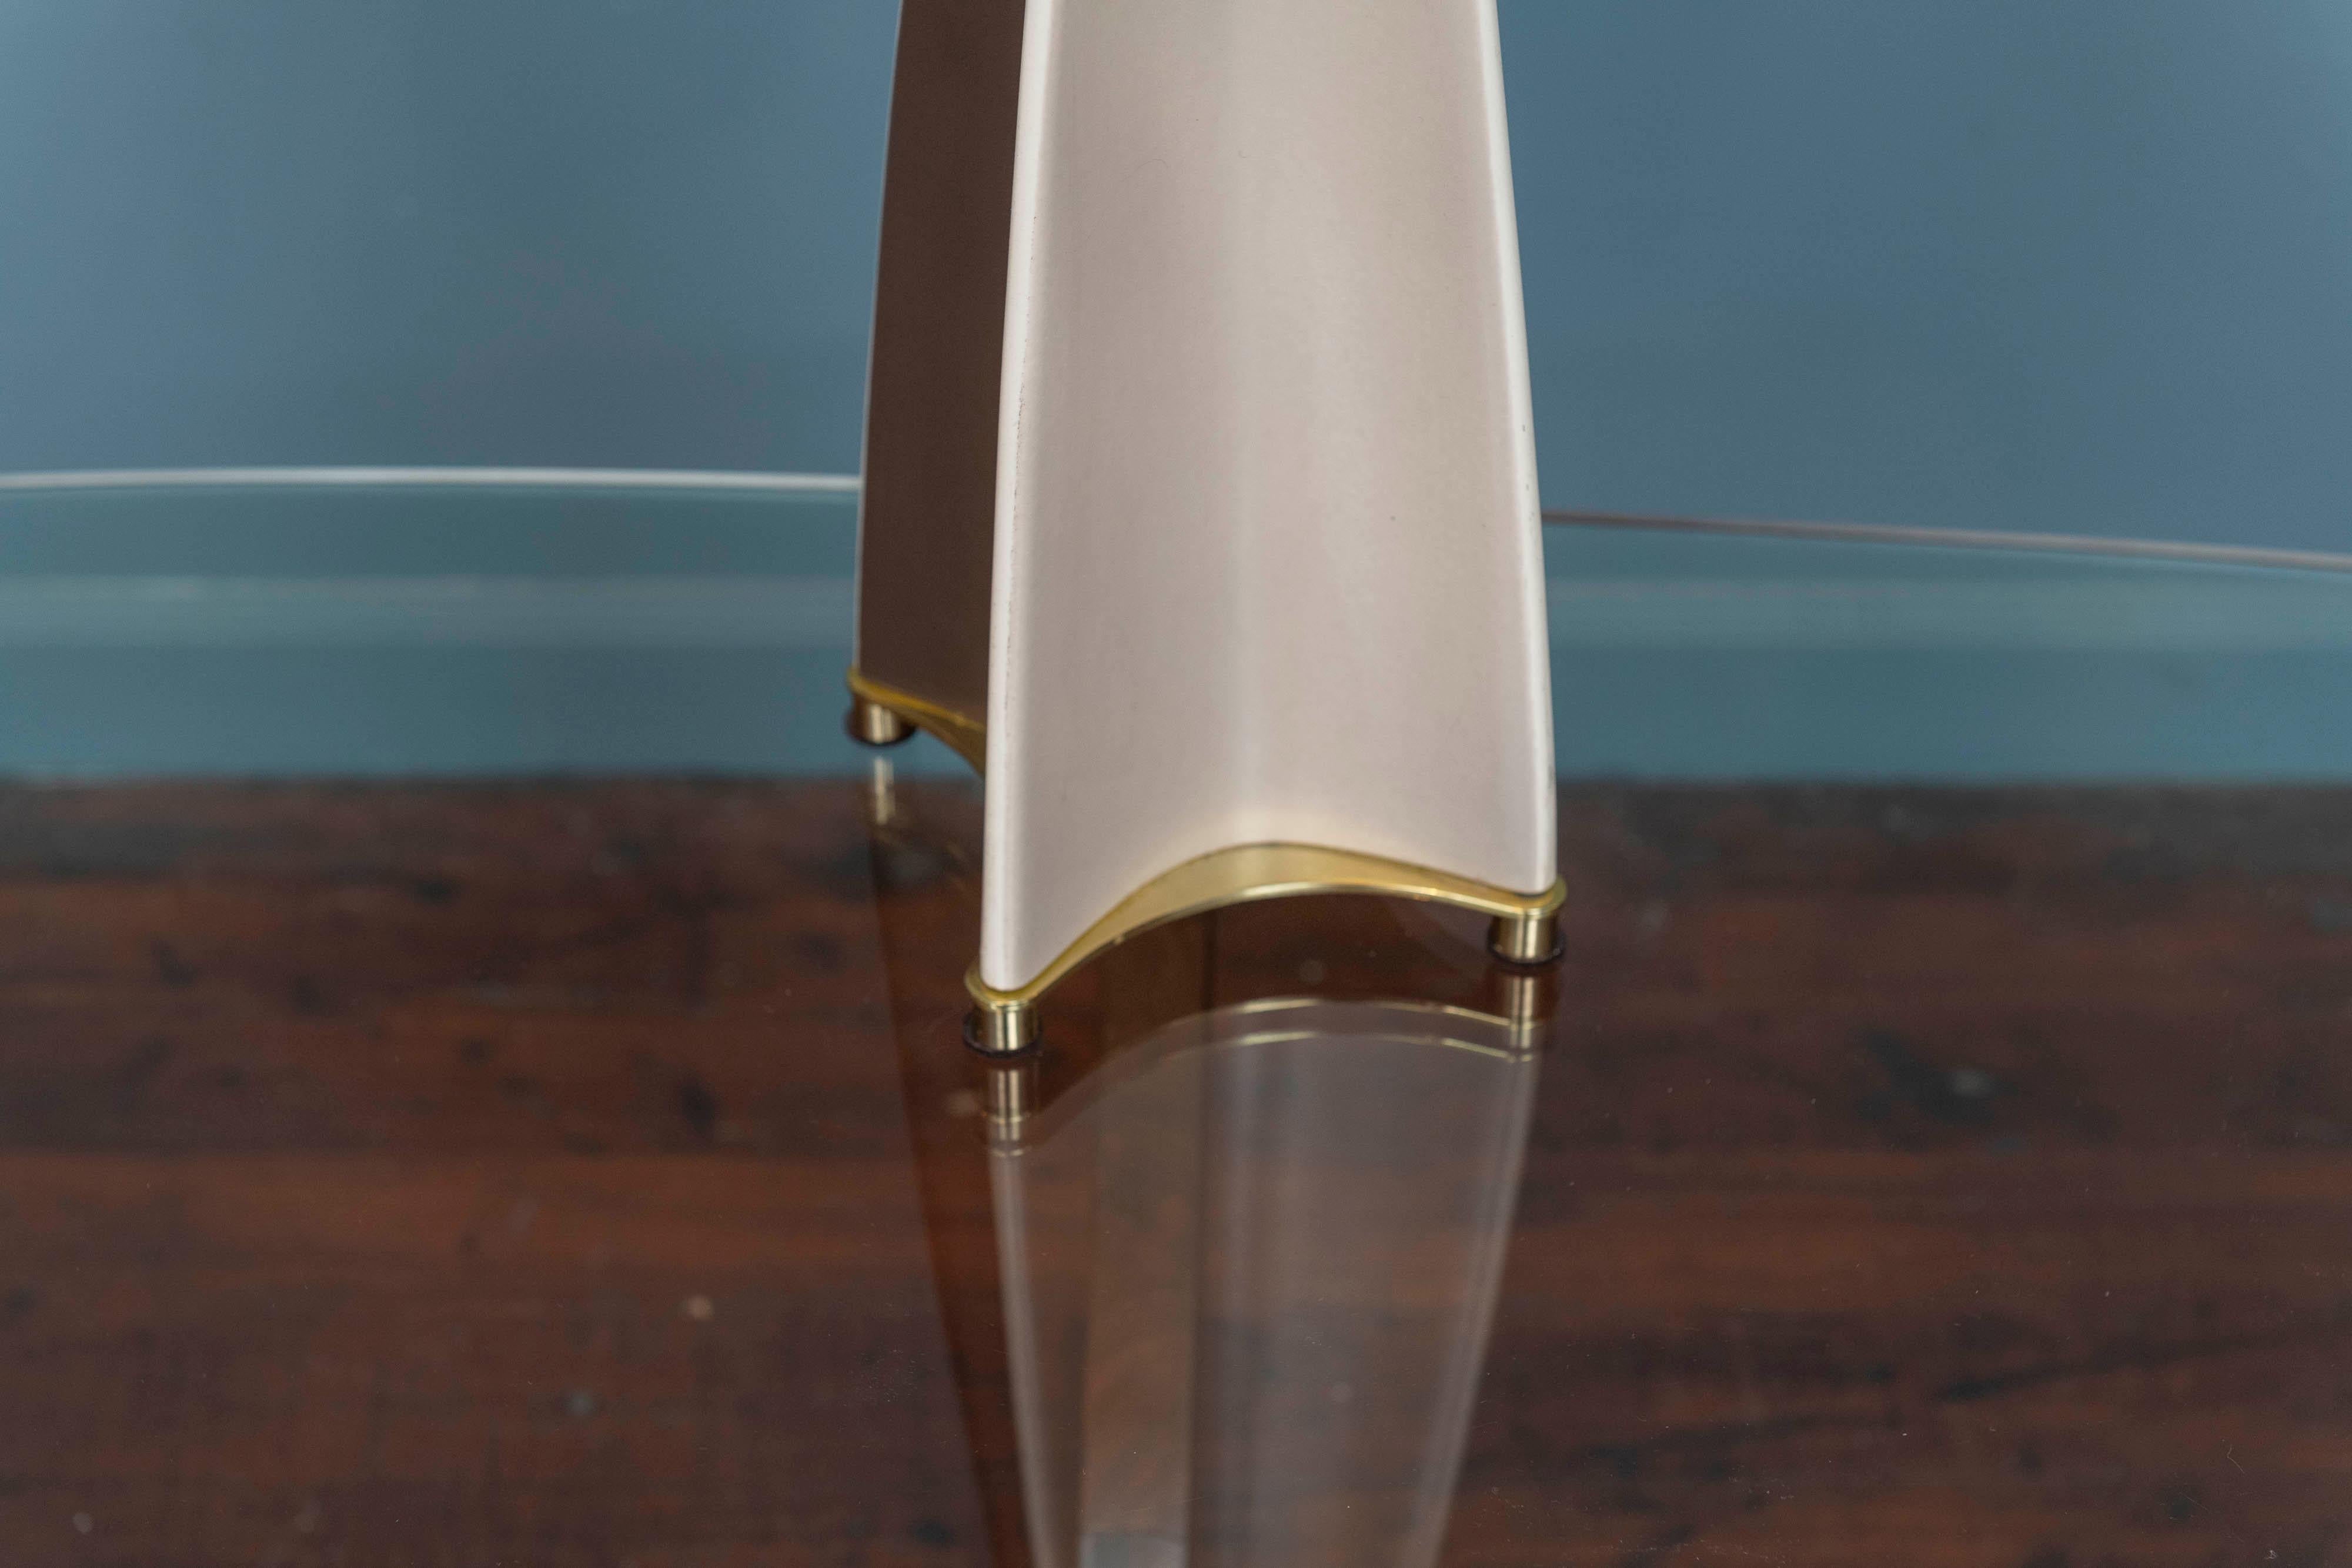 Lampe de table Parabolic Fin de Gerald Thurston pour Lightolier, Circa 1950's.